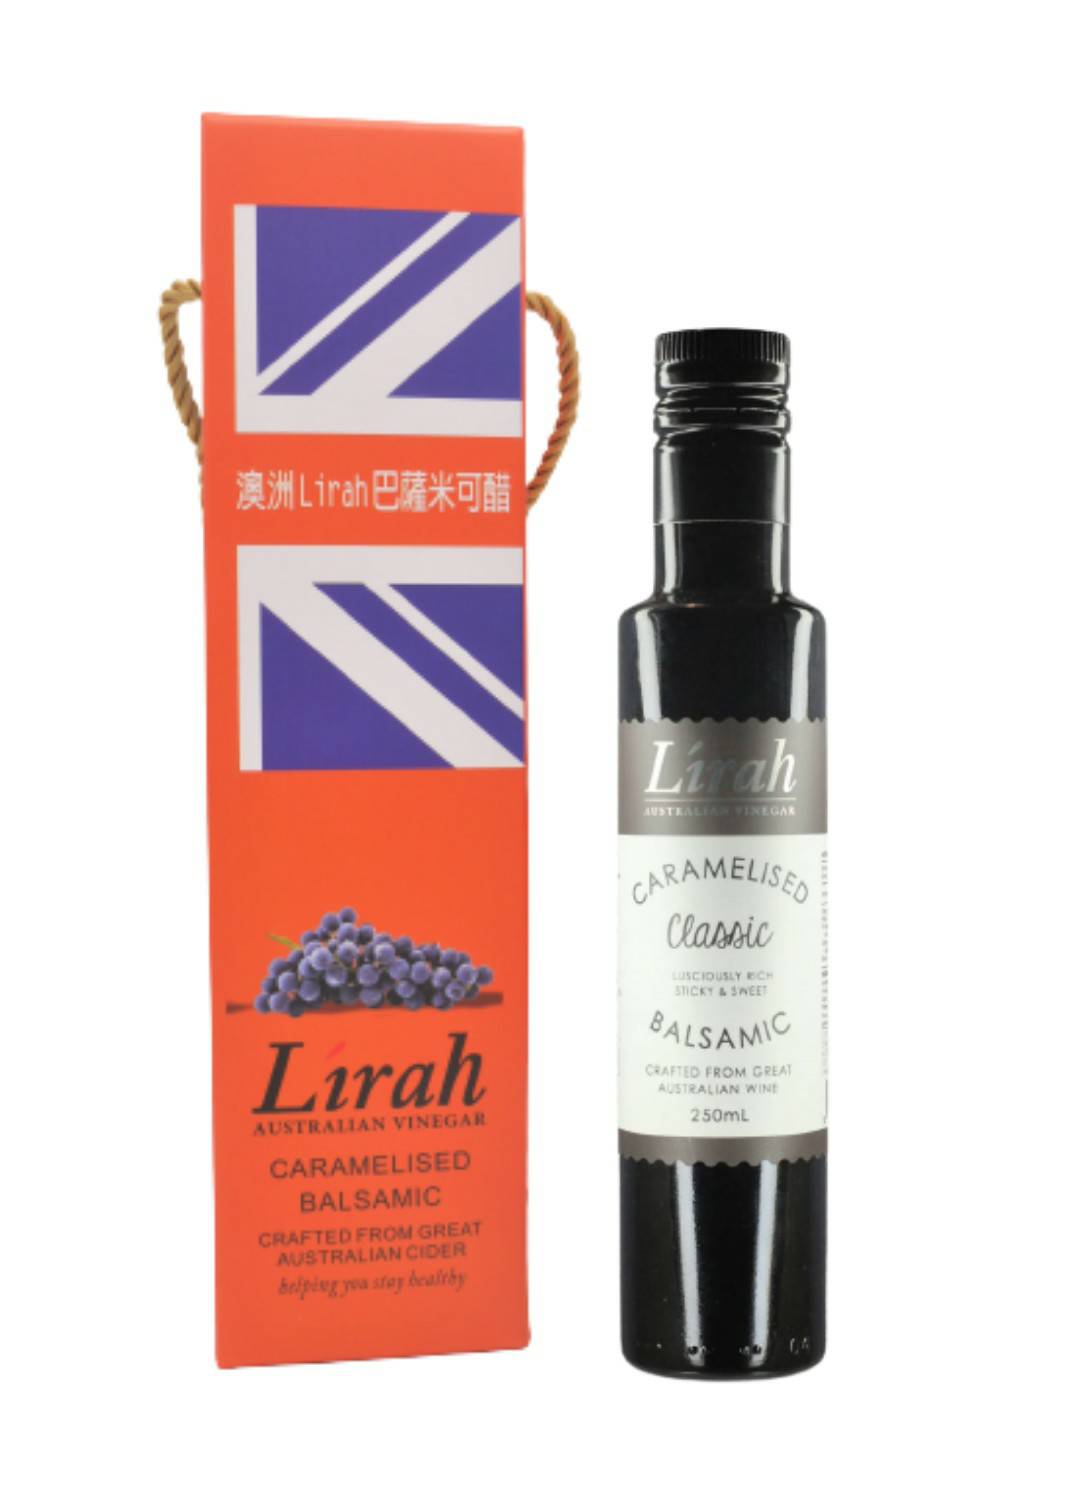 Lirah 巴薩米克醋(原味)250ml單入禮盒